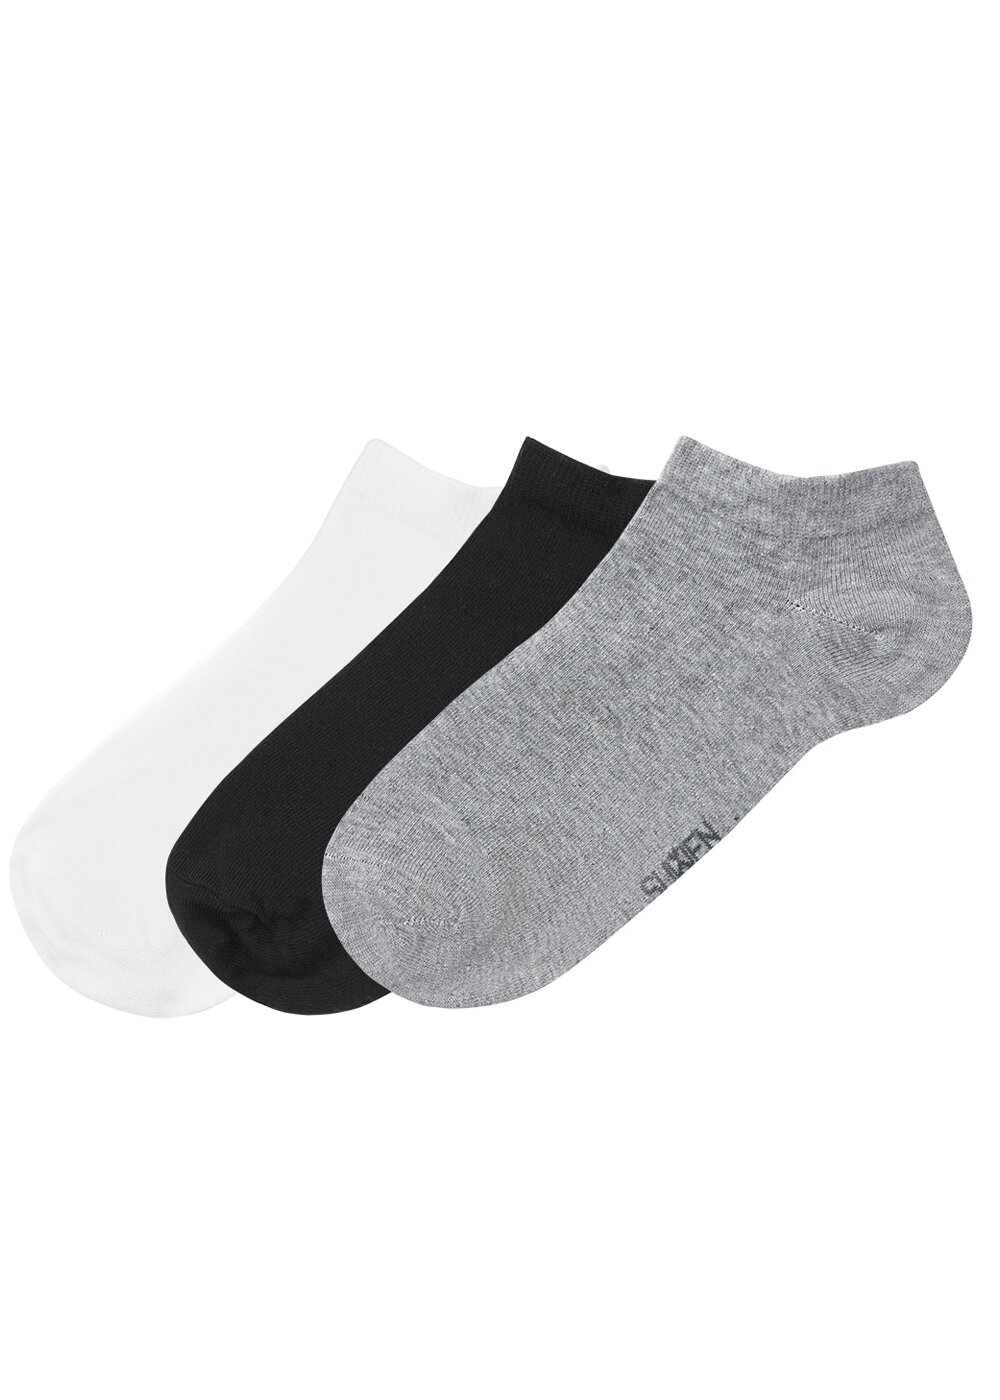 resm Erkek Basic 3 lü paket Çorap - SİYAH/BEYAZ/GRİ